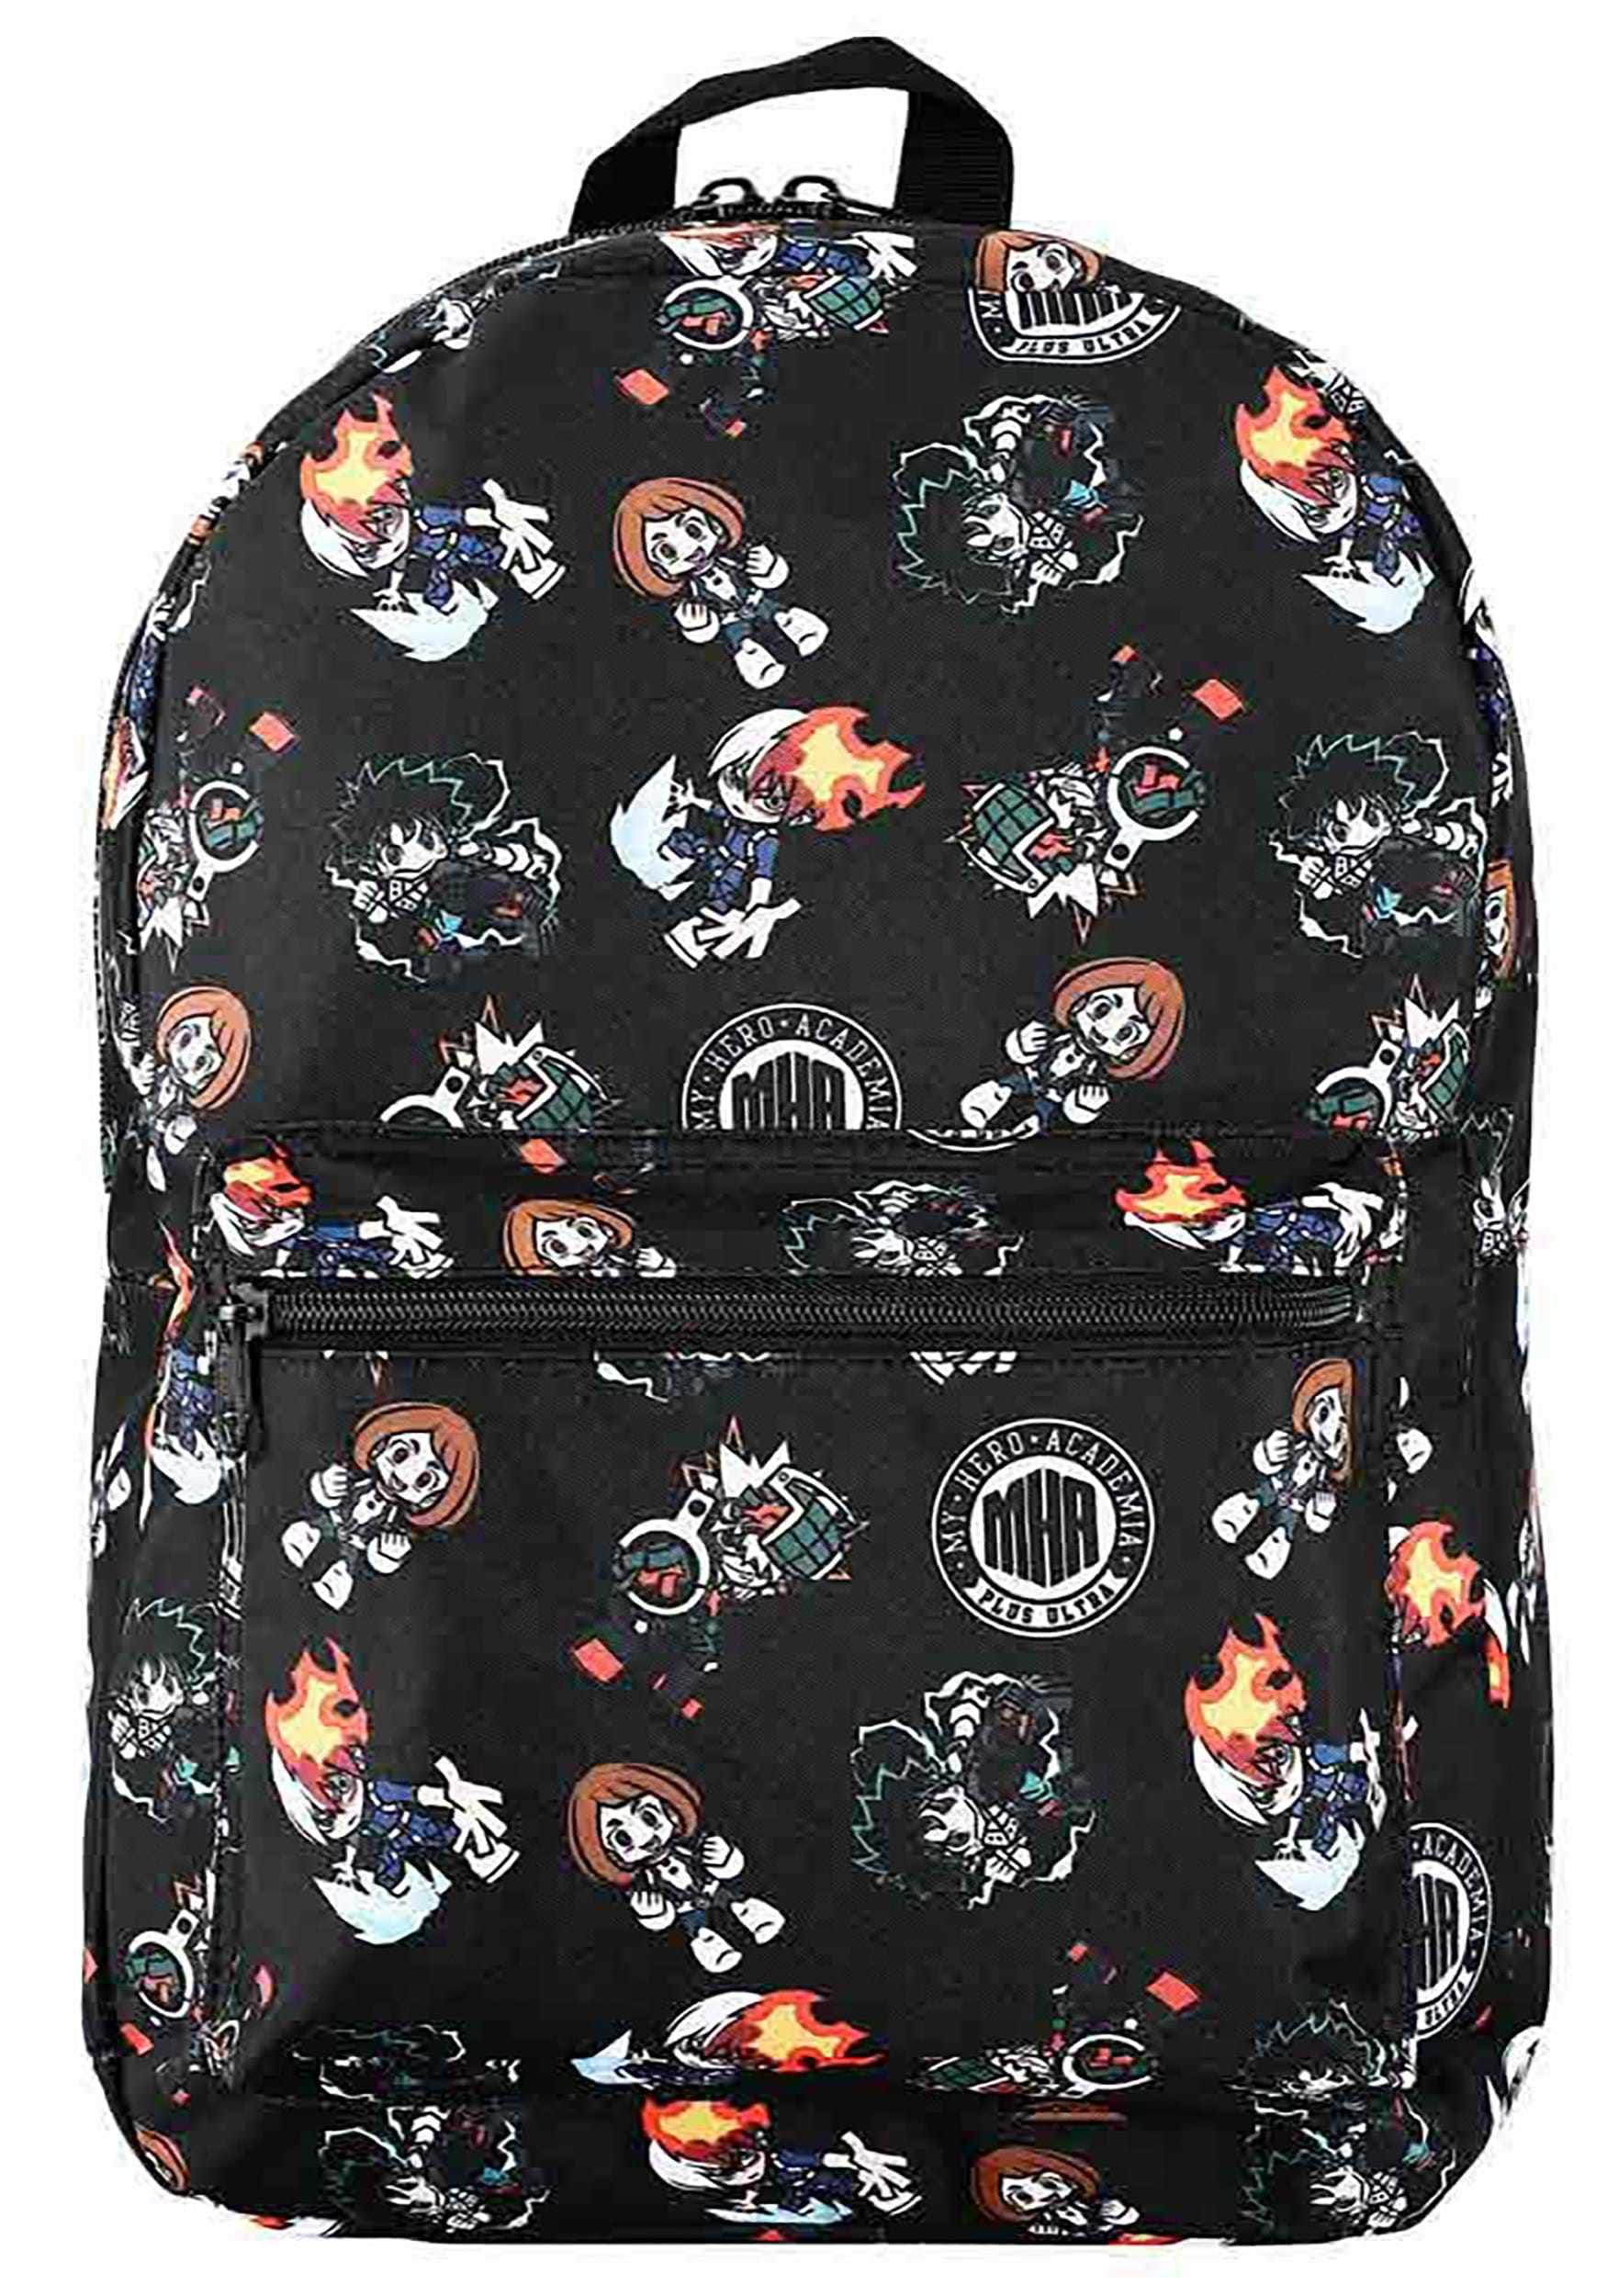 Share 152+ anime loungefly backpack best - 3tdesign.edu.vn